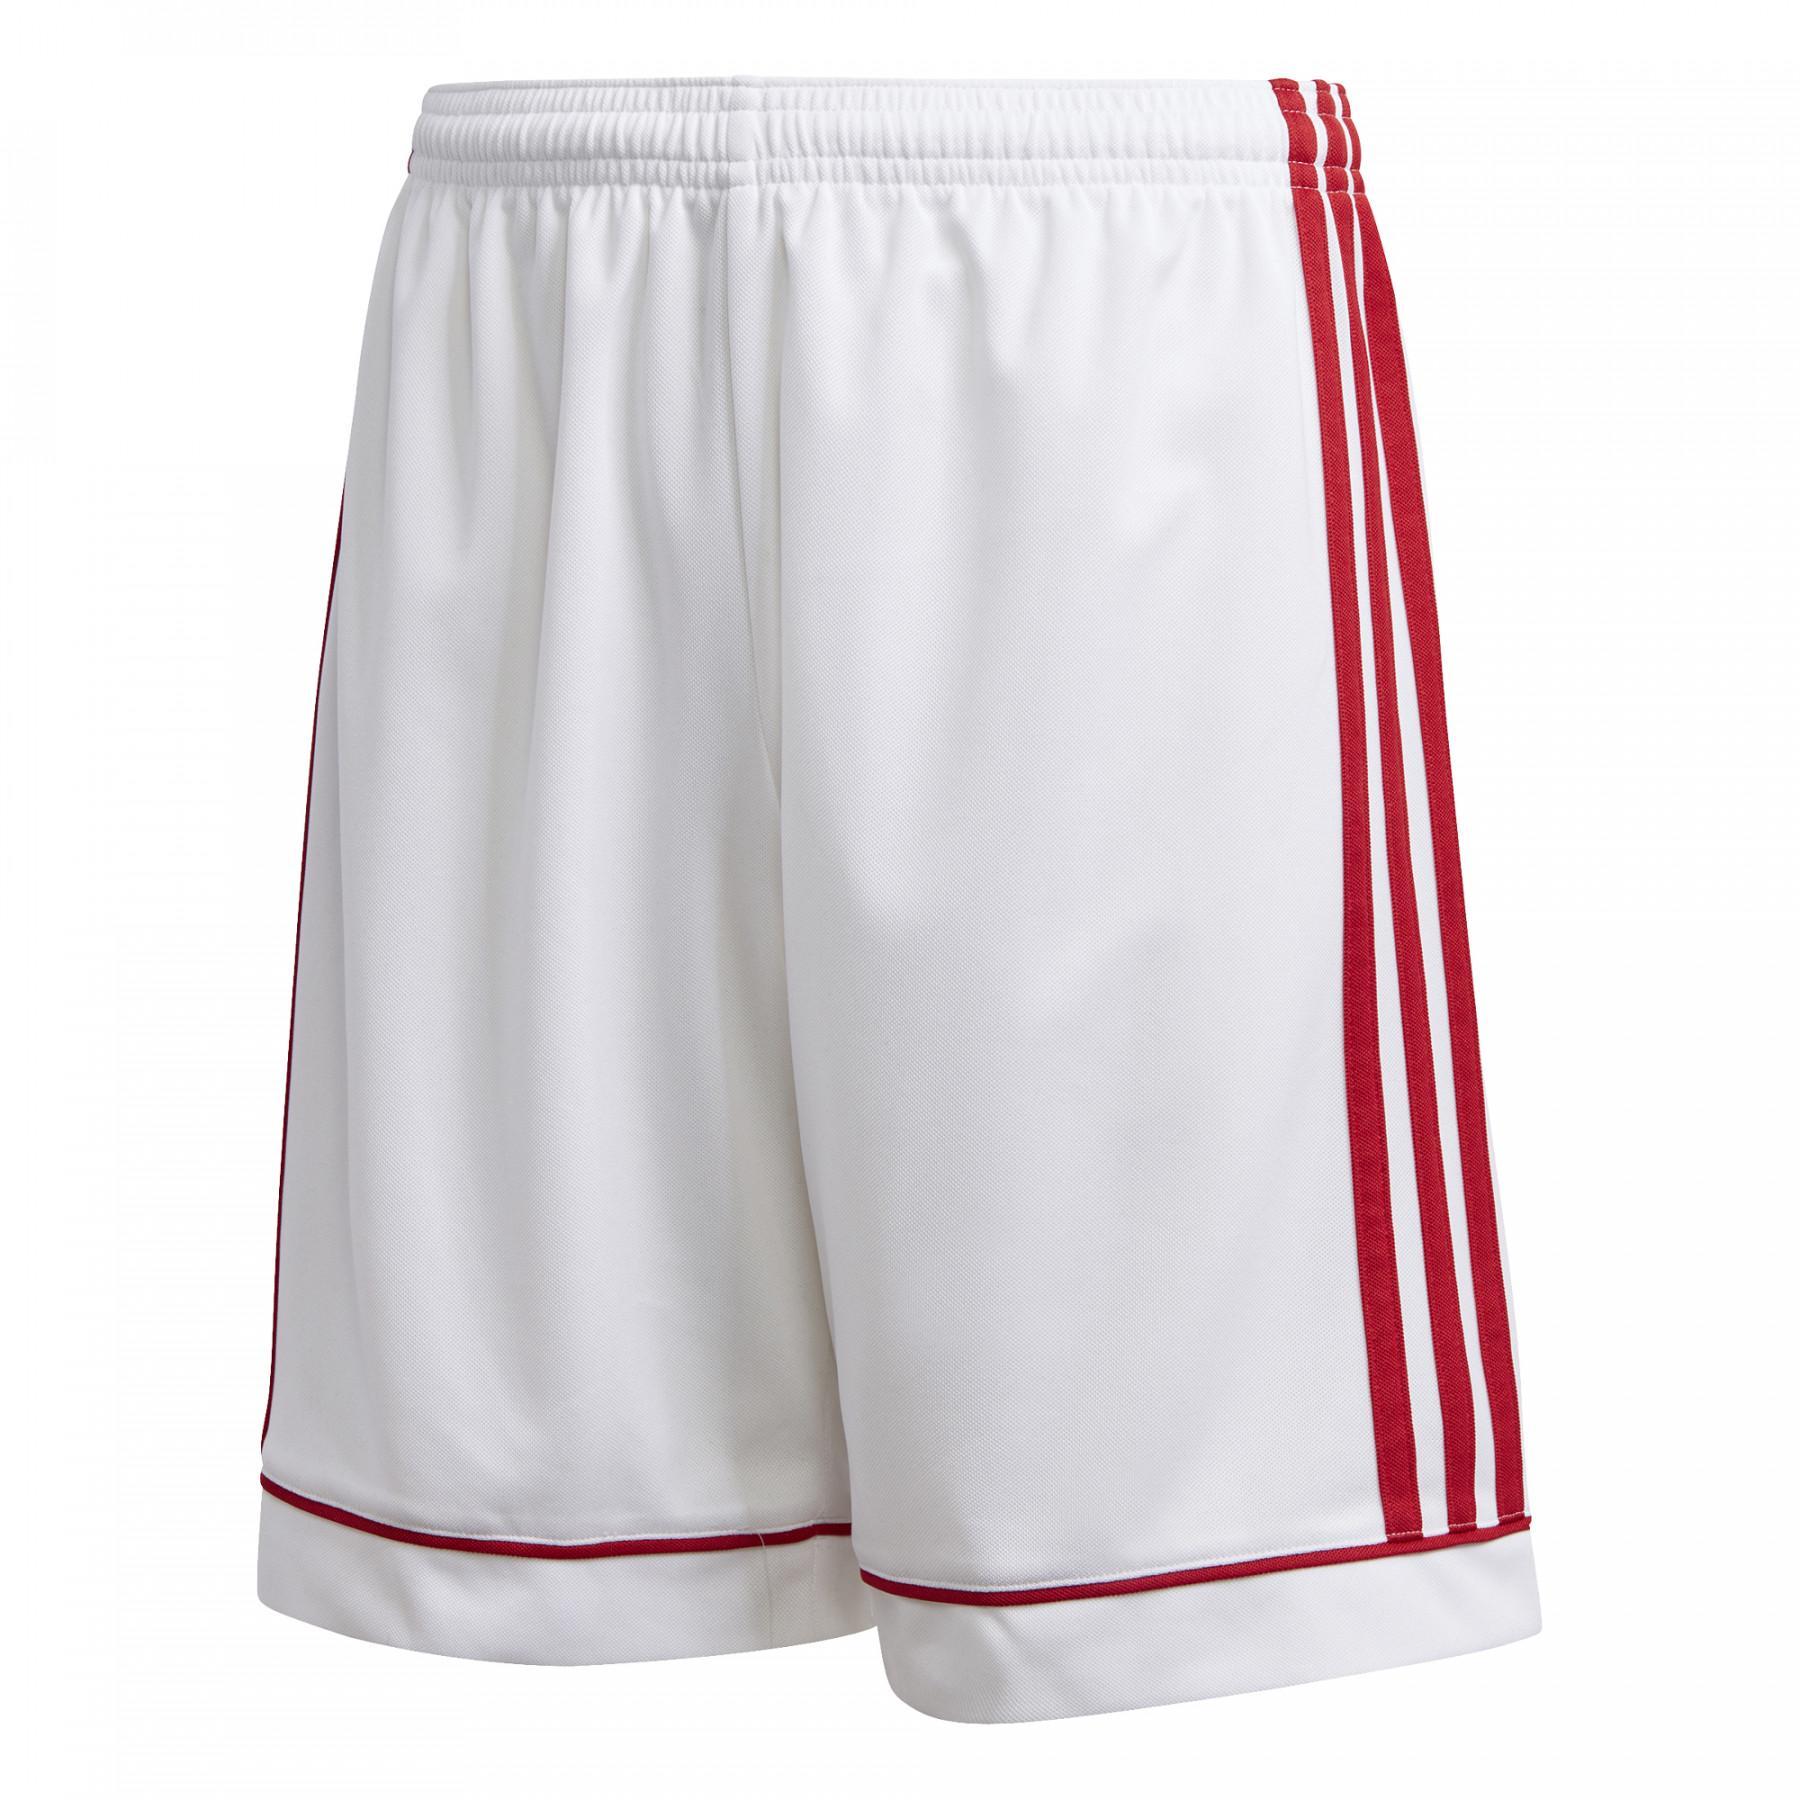 Adidasquadra 17 junior shorts